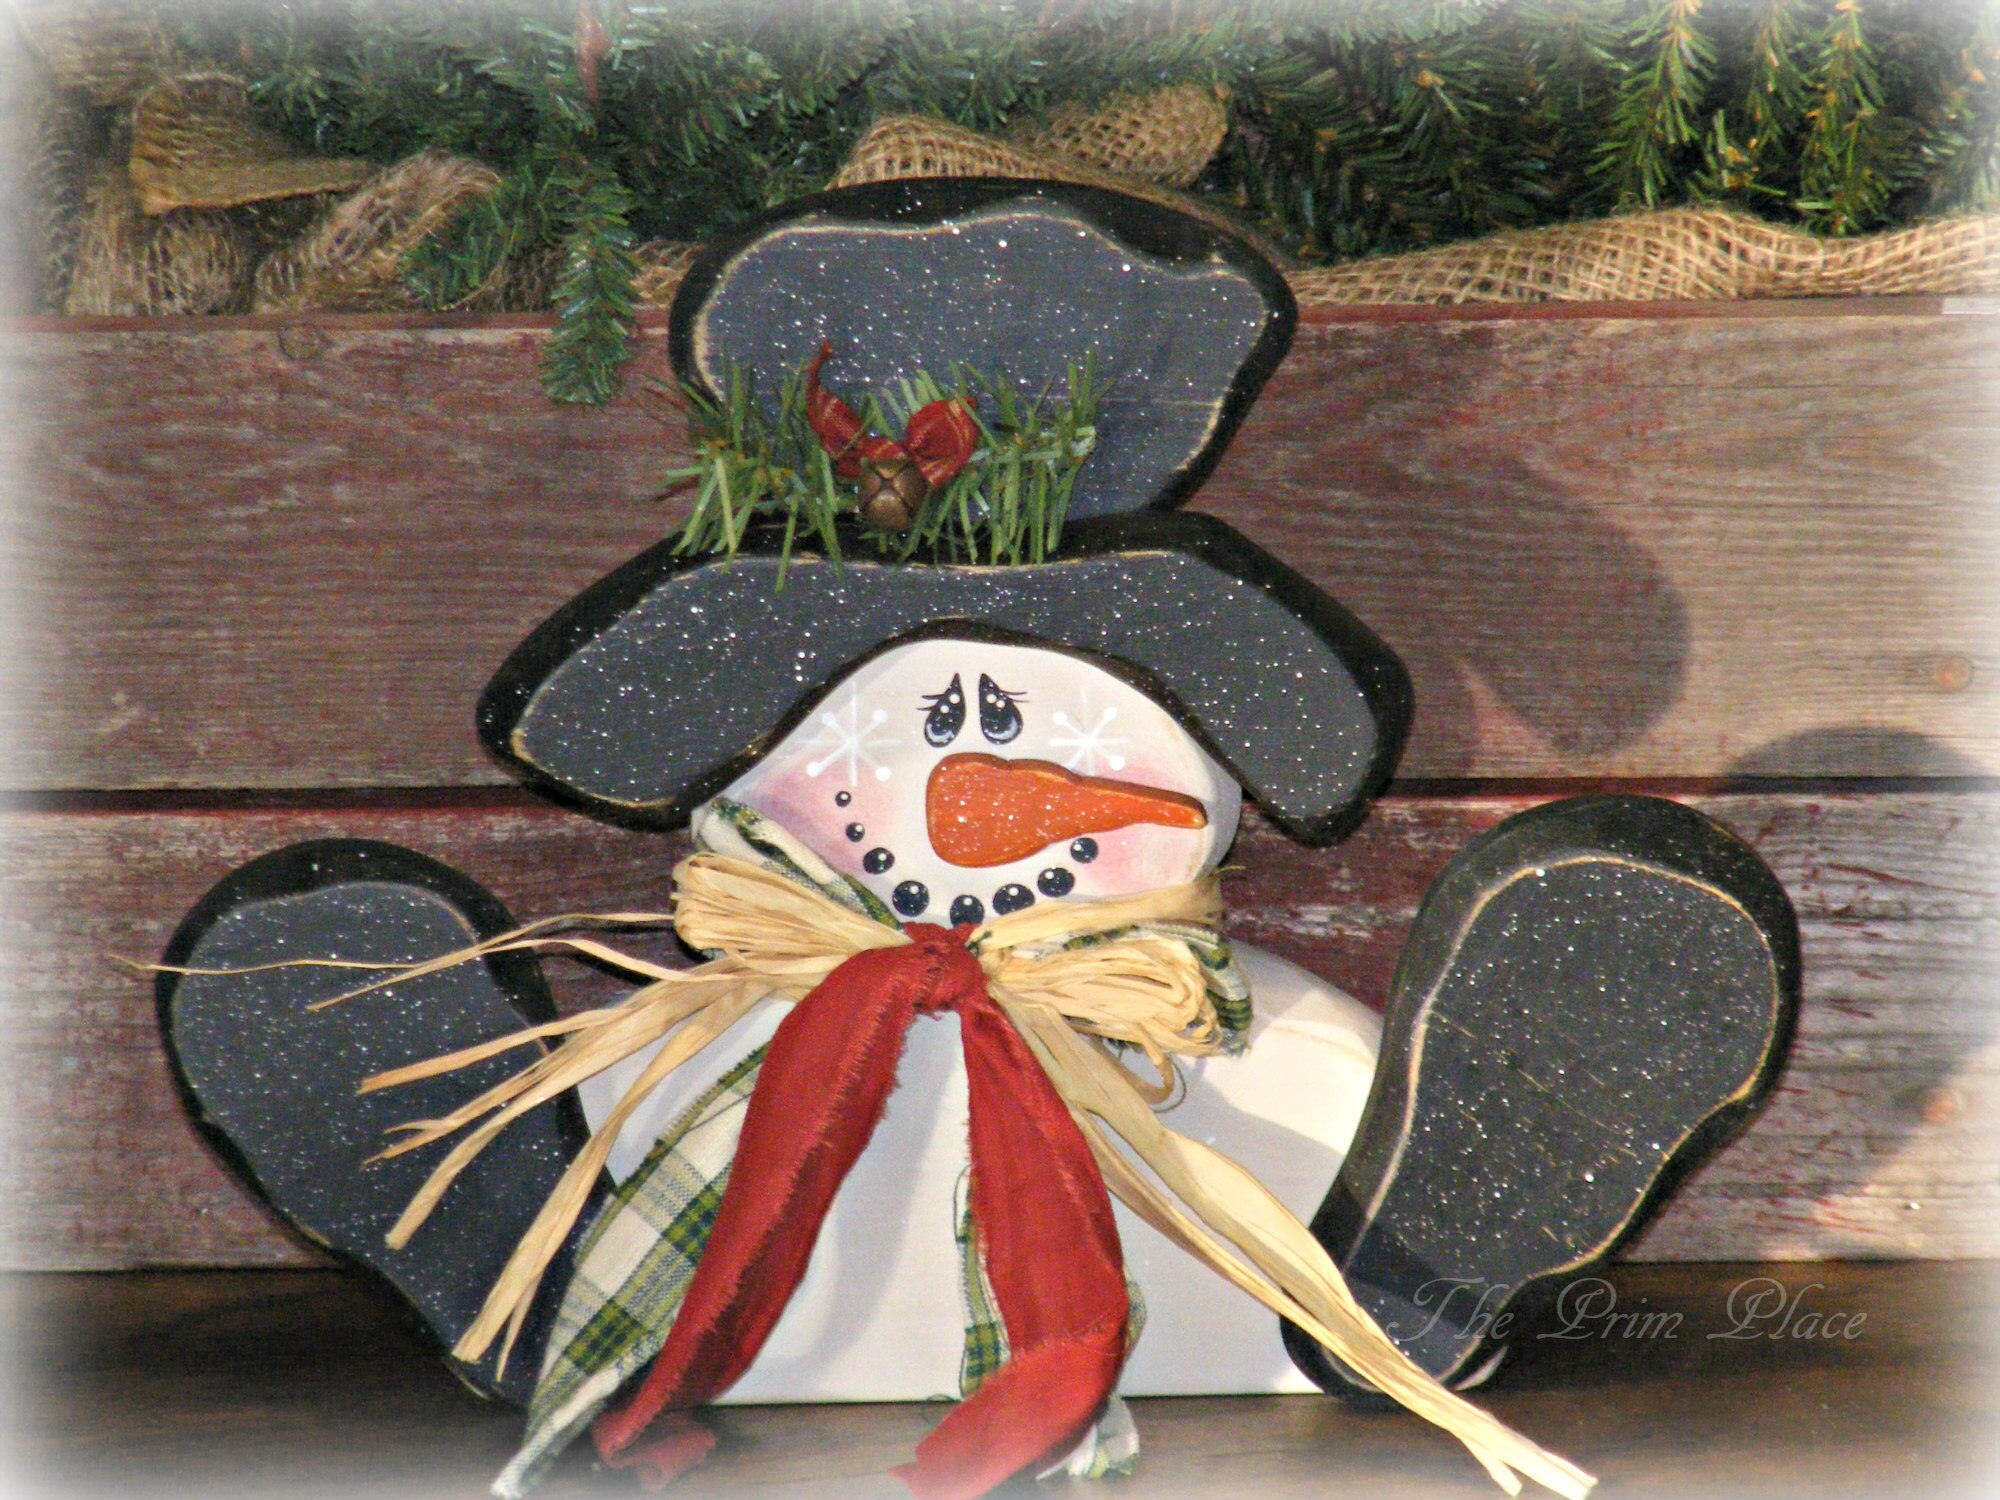 Primitive Wooden Snowman Snowman Decor Primitive Christmas | Etsy